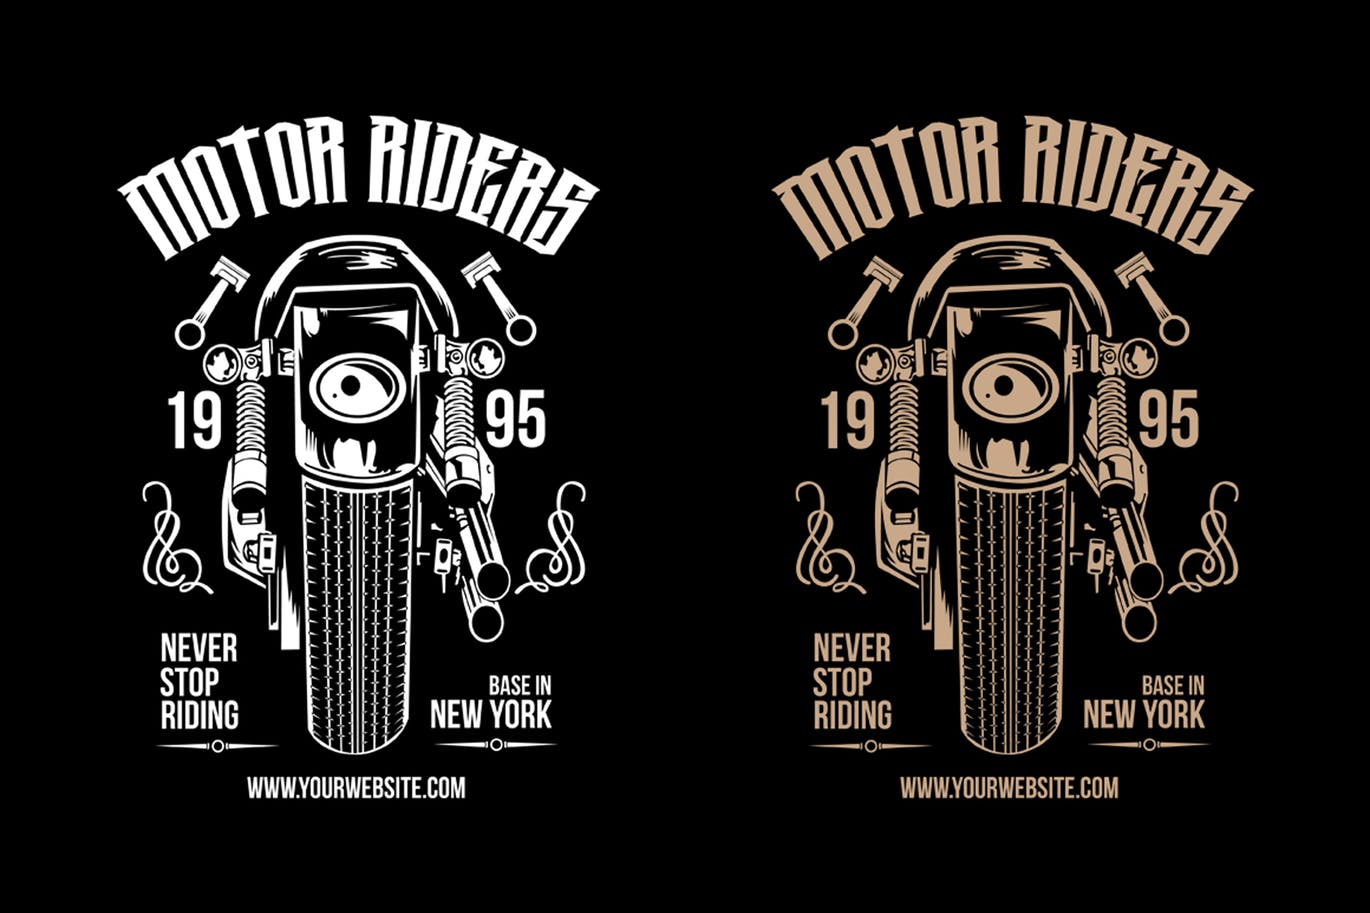 摩托车骑手手绘插画T恤印花设计模板 Motorcycle Riders T shirt Design Template插图